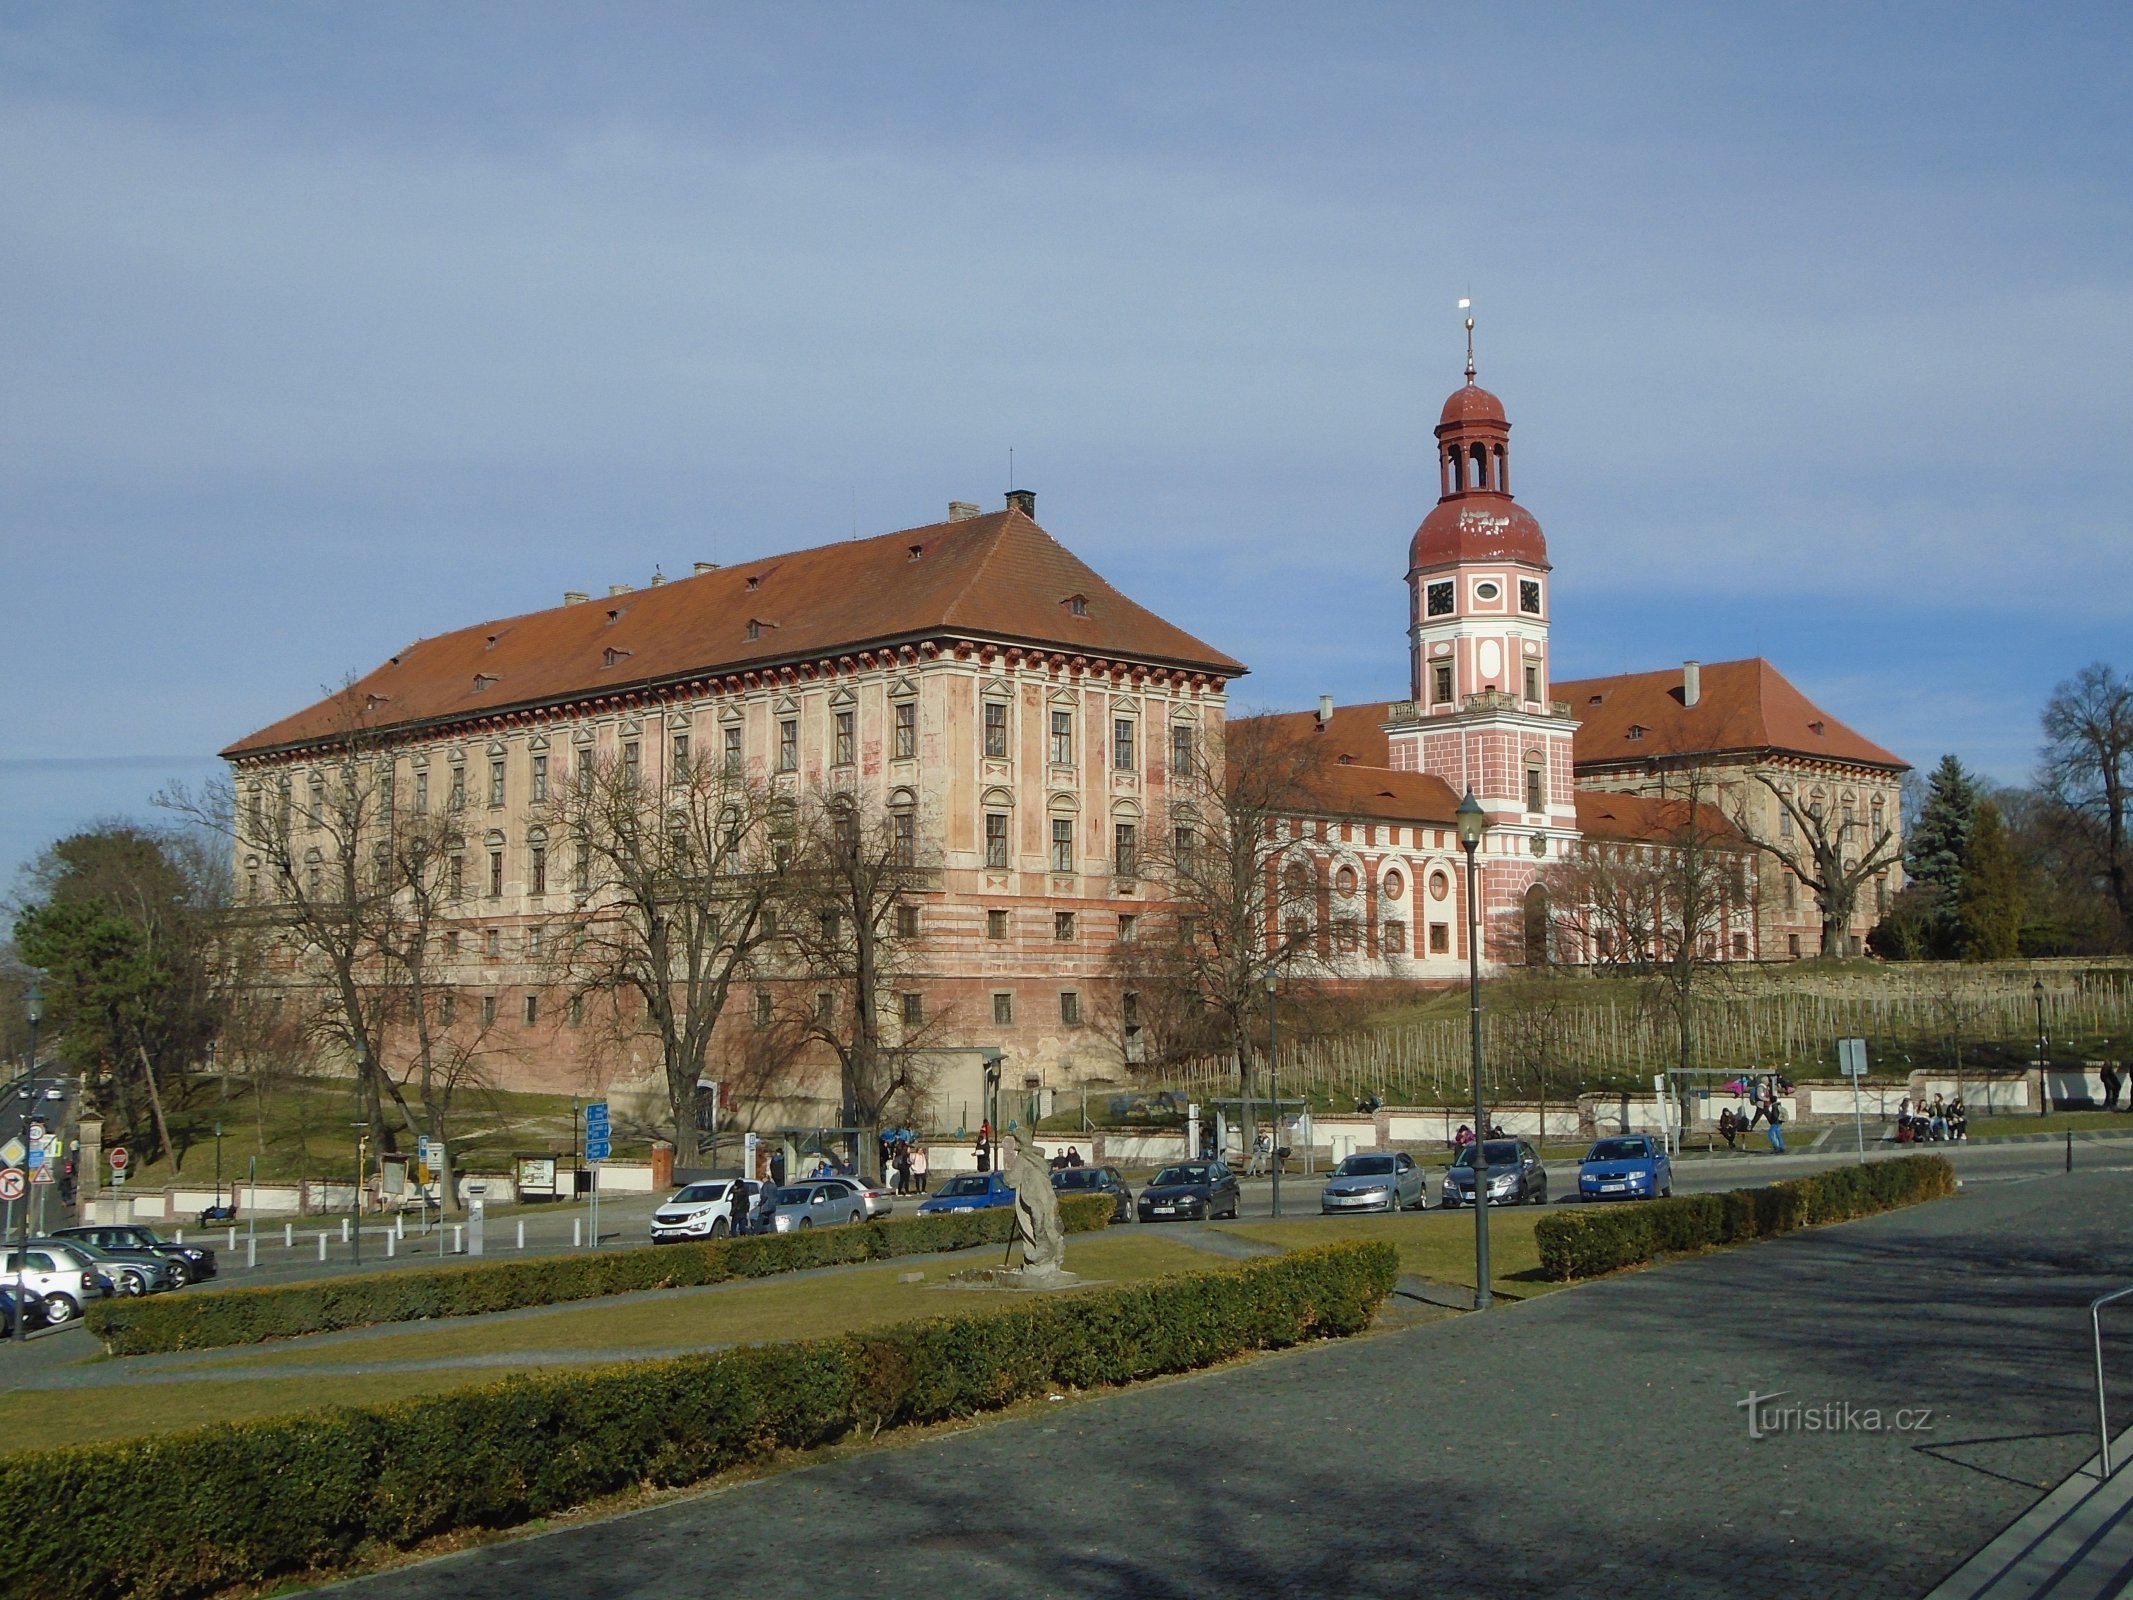 Lobkowicz slott (Roudnice nad Labem, 6.3.2019 mars XNUMX)